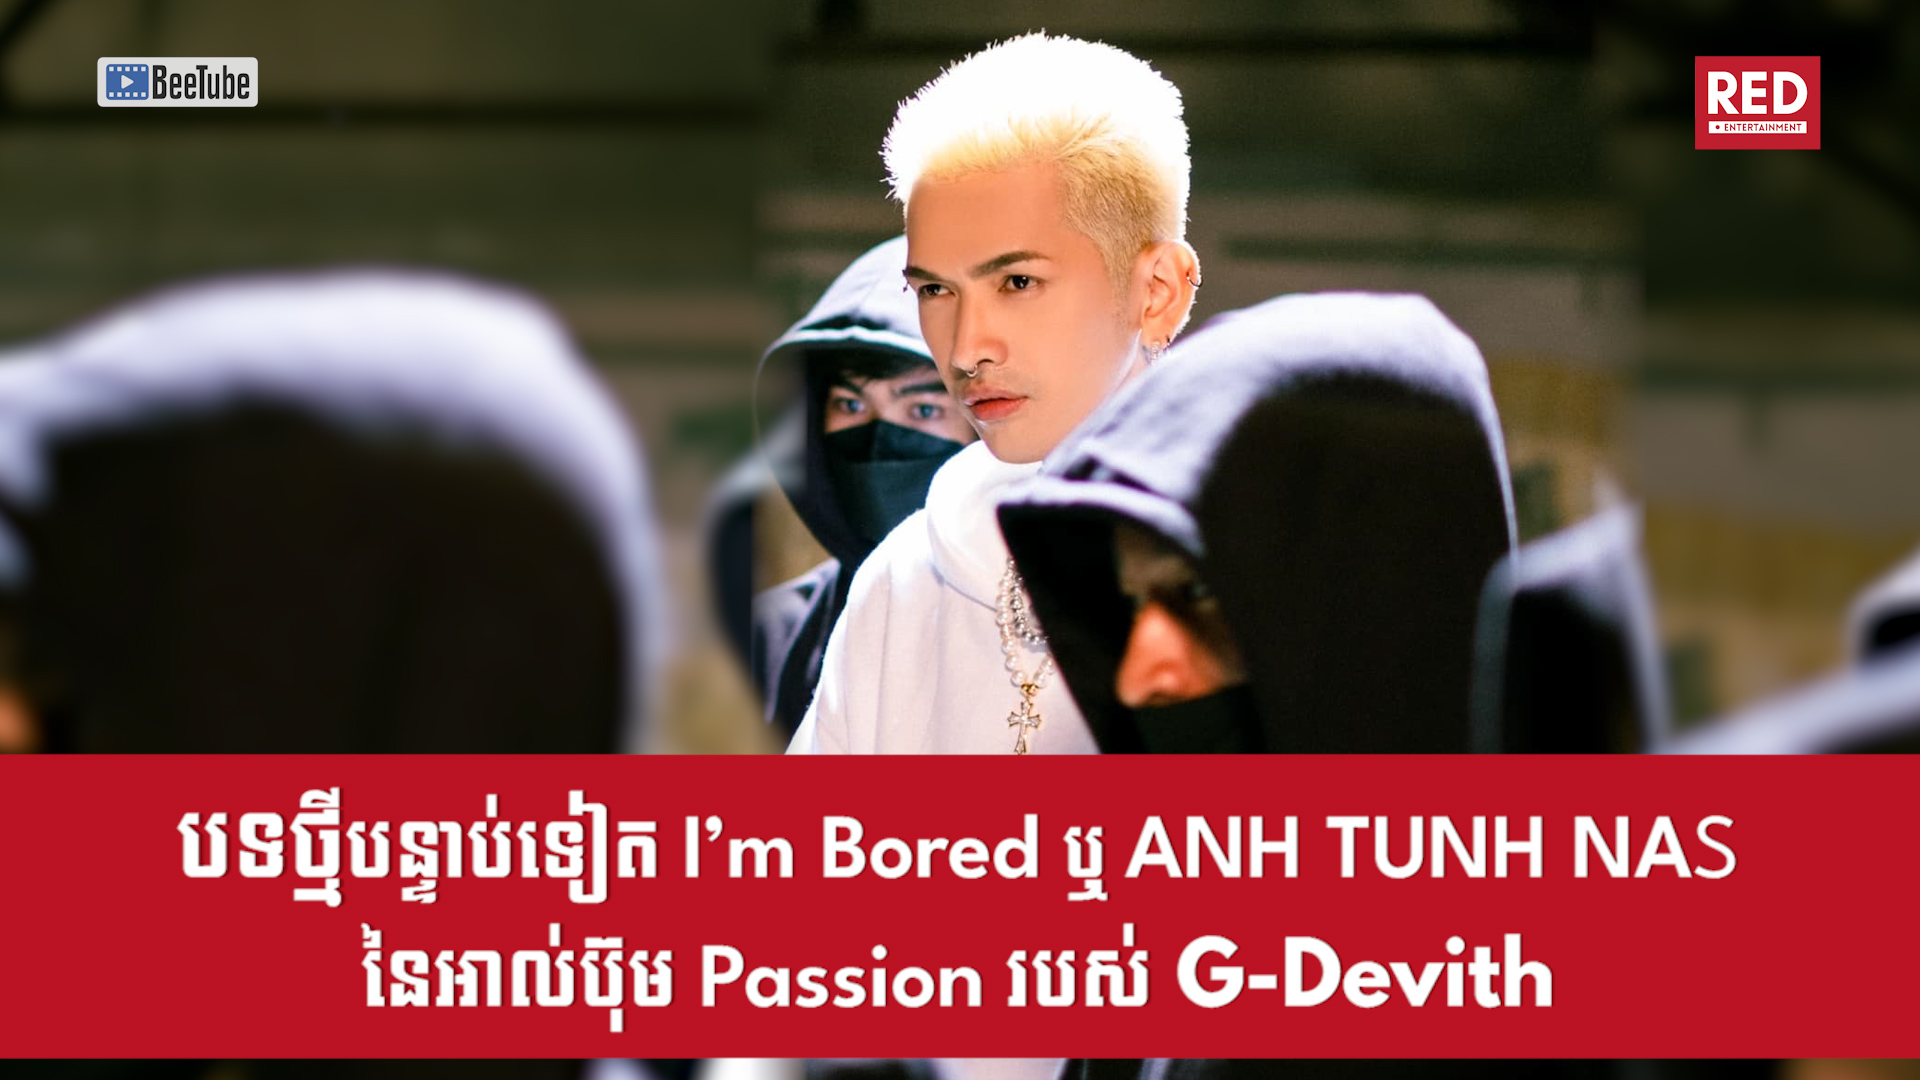 បទចម្រៀងថ្មីបន្ទាប់ទៀត! I’m Bored ឬ ANH TUNH NAS នៃអាល់ប៊ុម Passion របស់ G-Devith​ នឹងត្រូវបានចេញផ្សាយនៅថ្ងៃសៅរ៏នេះ! 